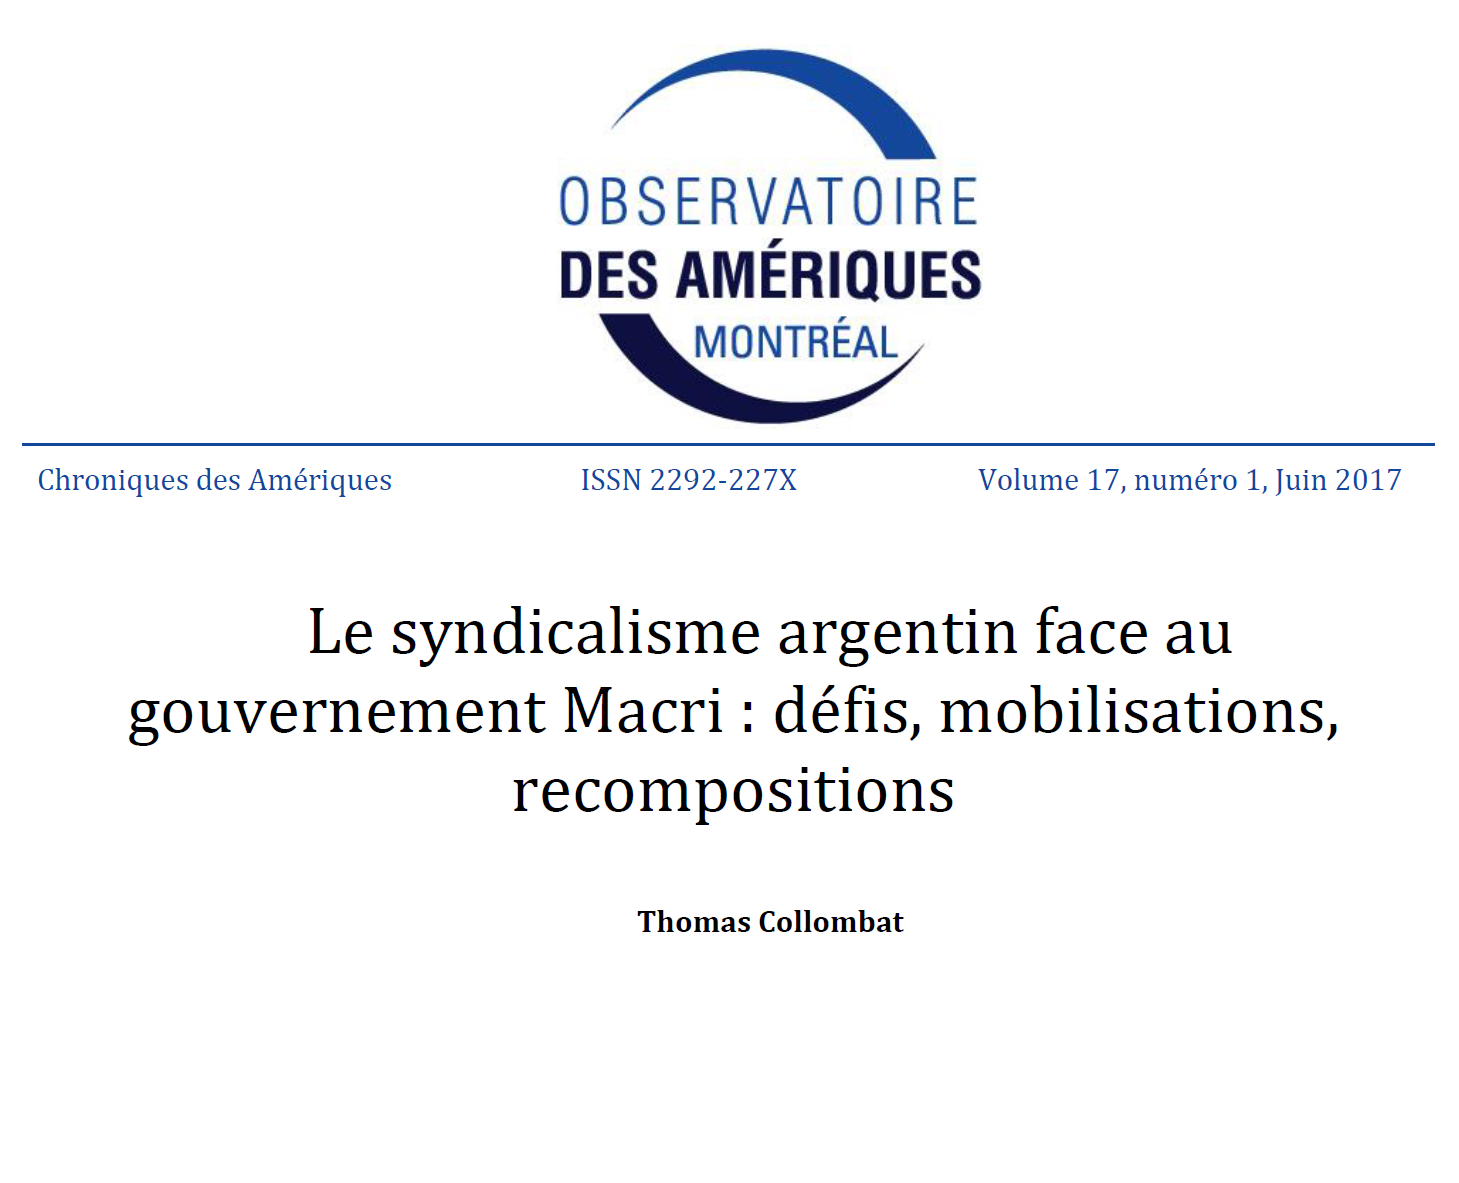 Le syndicalisme argentin face au gouvernement Macri : défis, mobilisations, recompositions